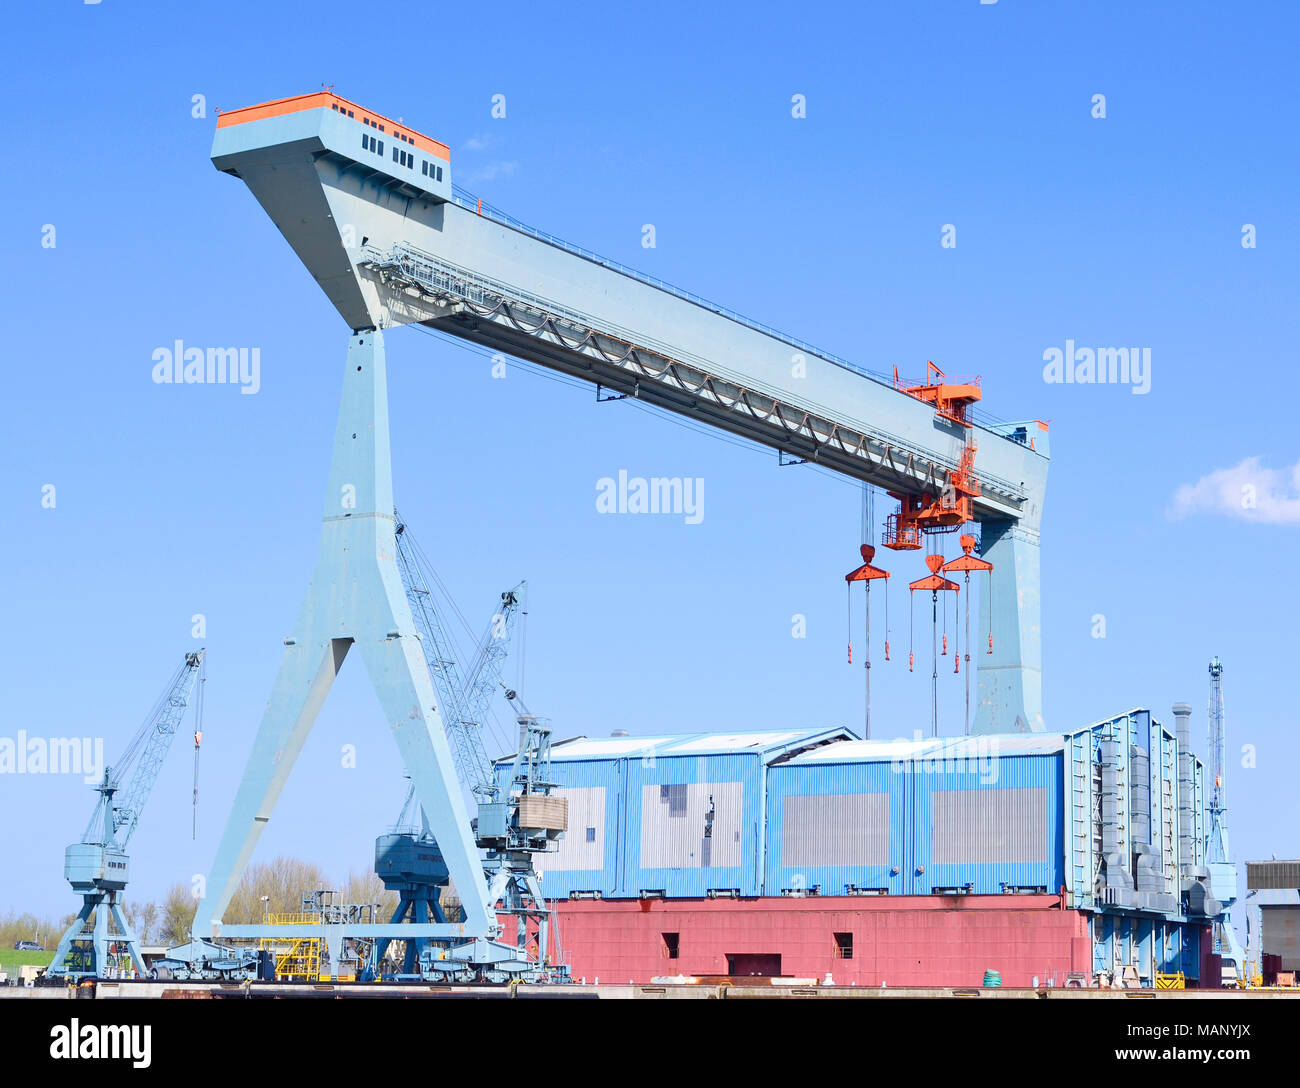 Container Hafen mit hafenkranen oder Fracht Krane. Wharf oder gütertransporte Szene, industrielle Transport oder Versand Szene. Hamburger Hafen. Stockfoto